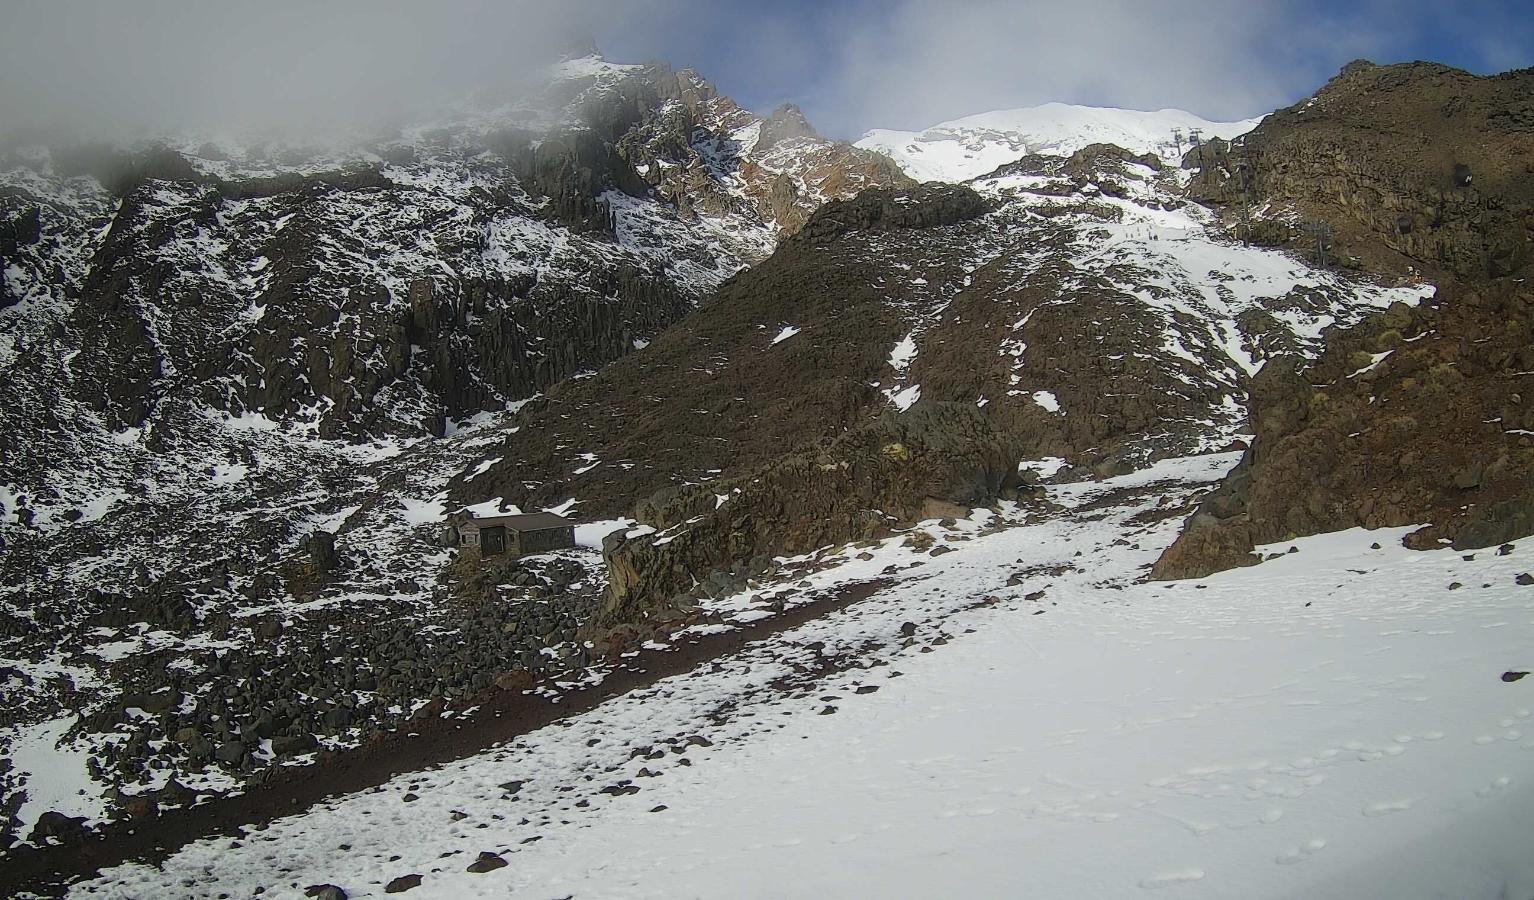 Webcam Whakapapa: The staircase slopes